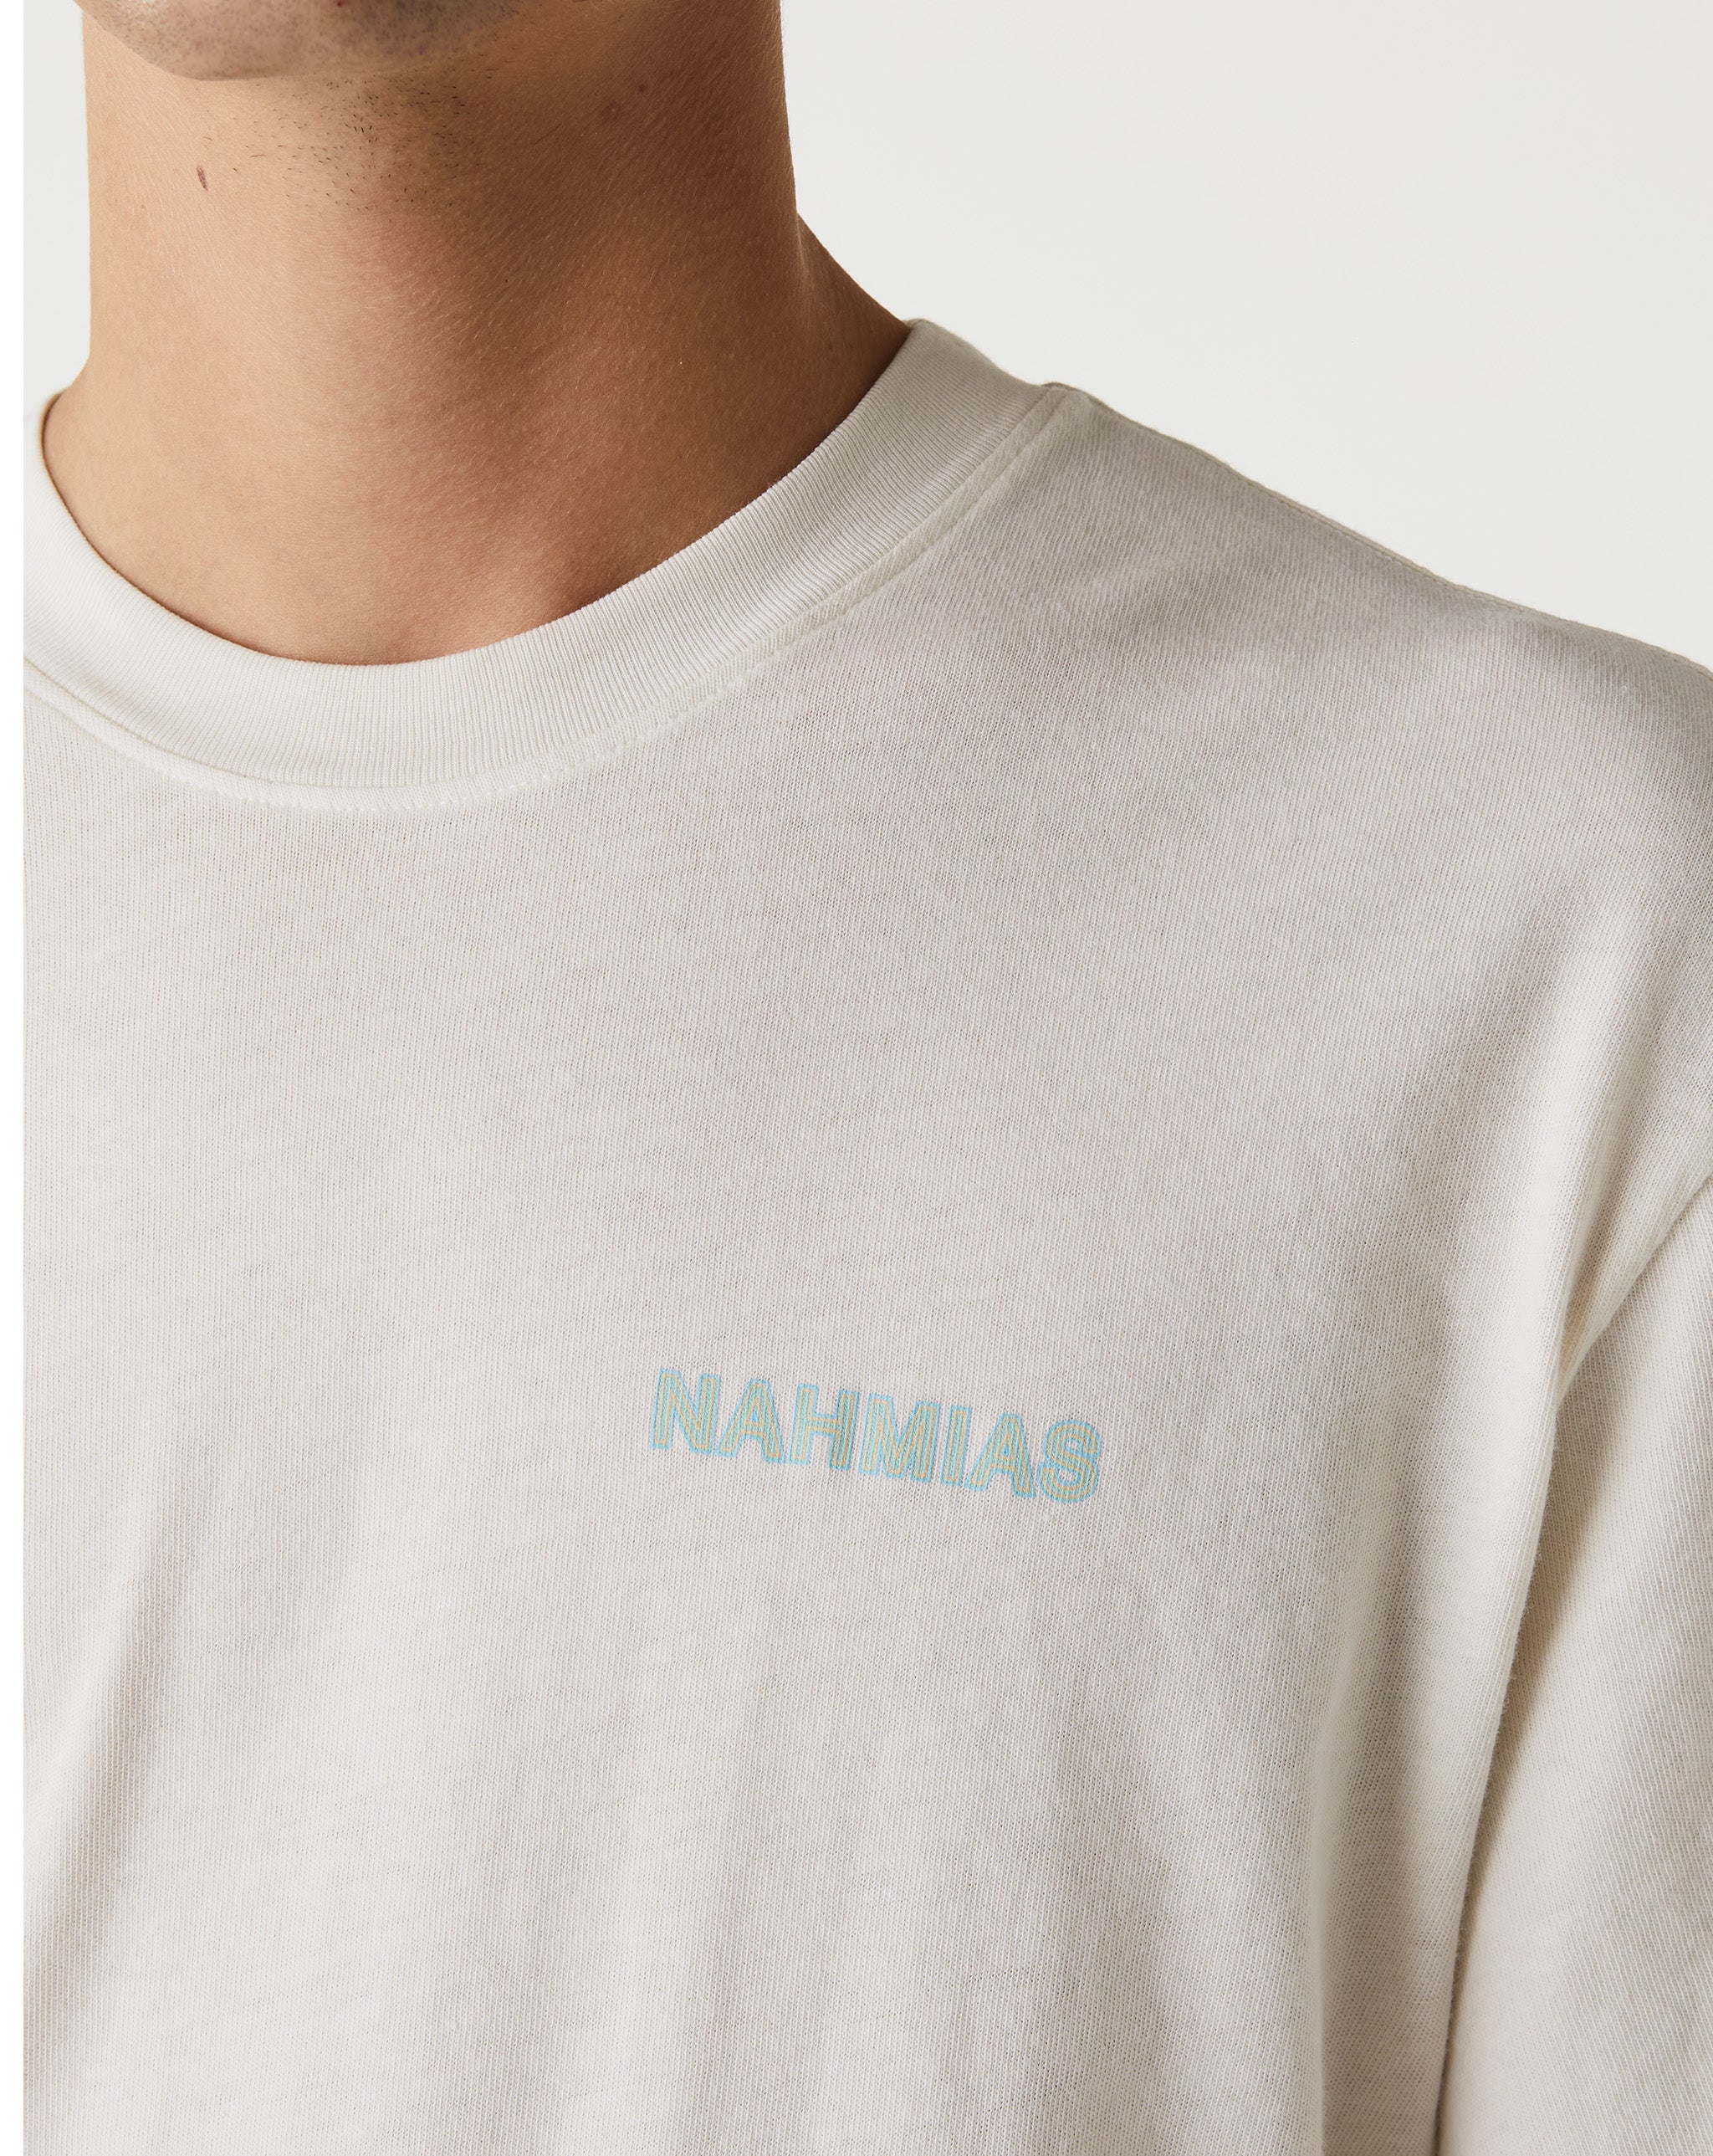 Nahmias Helly Hansen Nord Graphic HH Short Sleeve T-Shirt  - Cheap Urlfreeze Jordan outlet